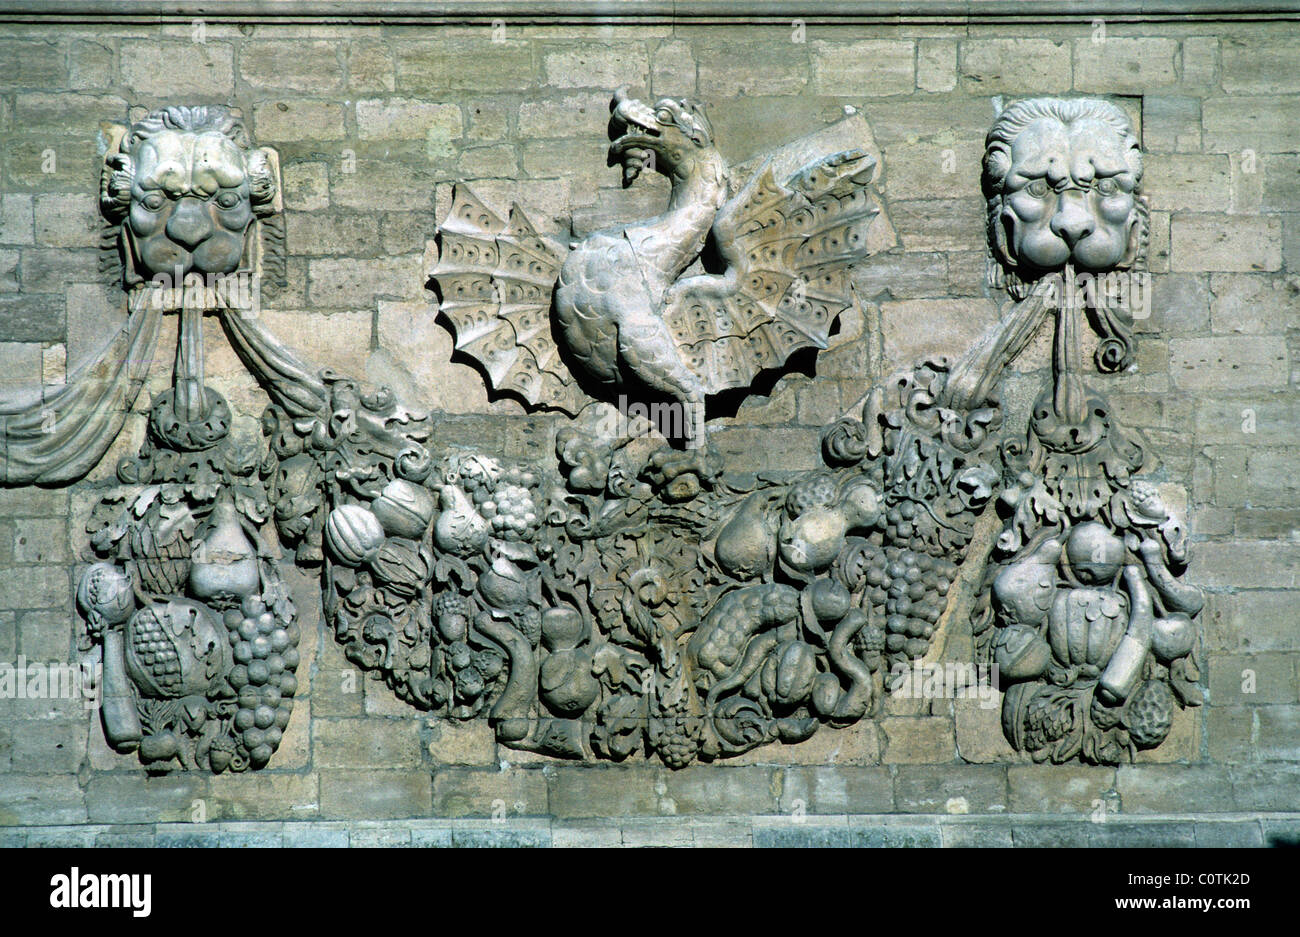 Dragon, Garland & Lions, emblème, écusson ou symbole de la famille du Cardinal Borghèse, Hôtel des Monnaies (1616), Avignon, Vaucluse, Proence, France Banque D'Images